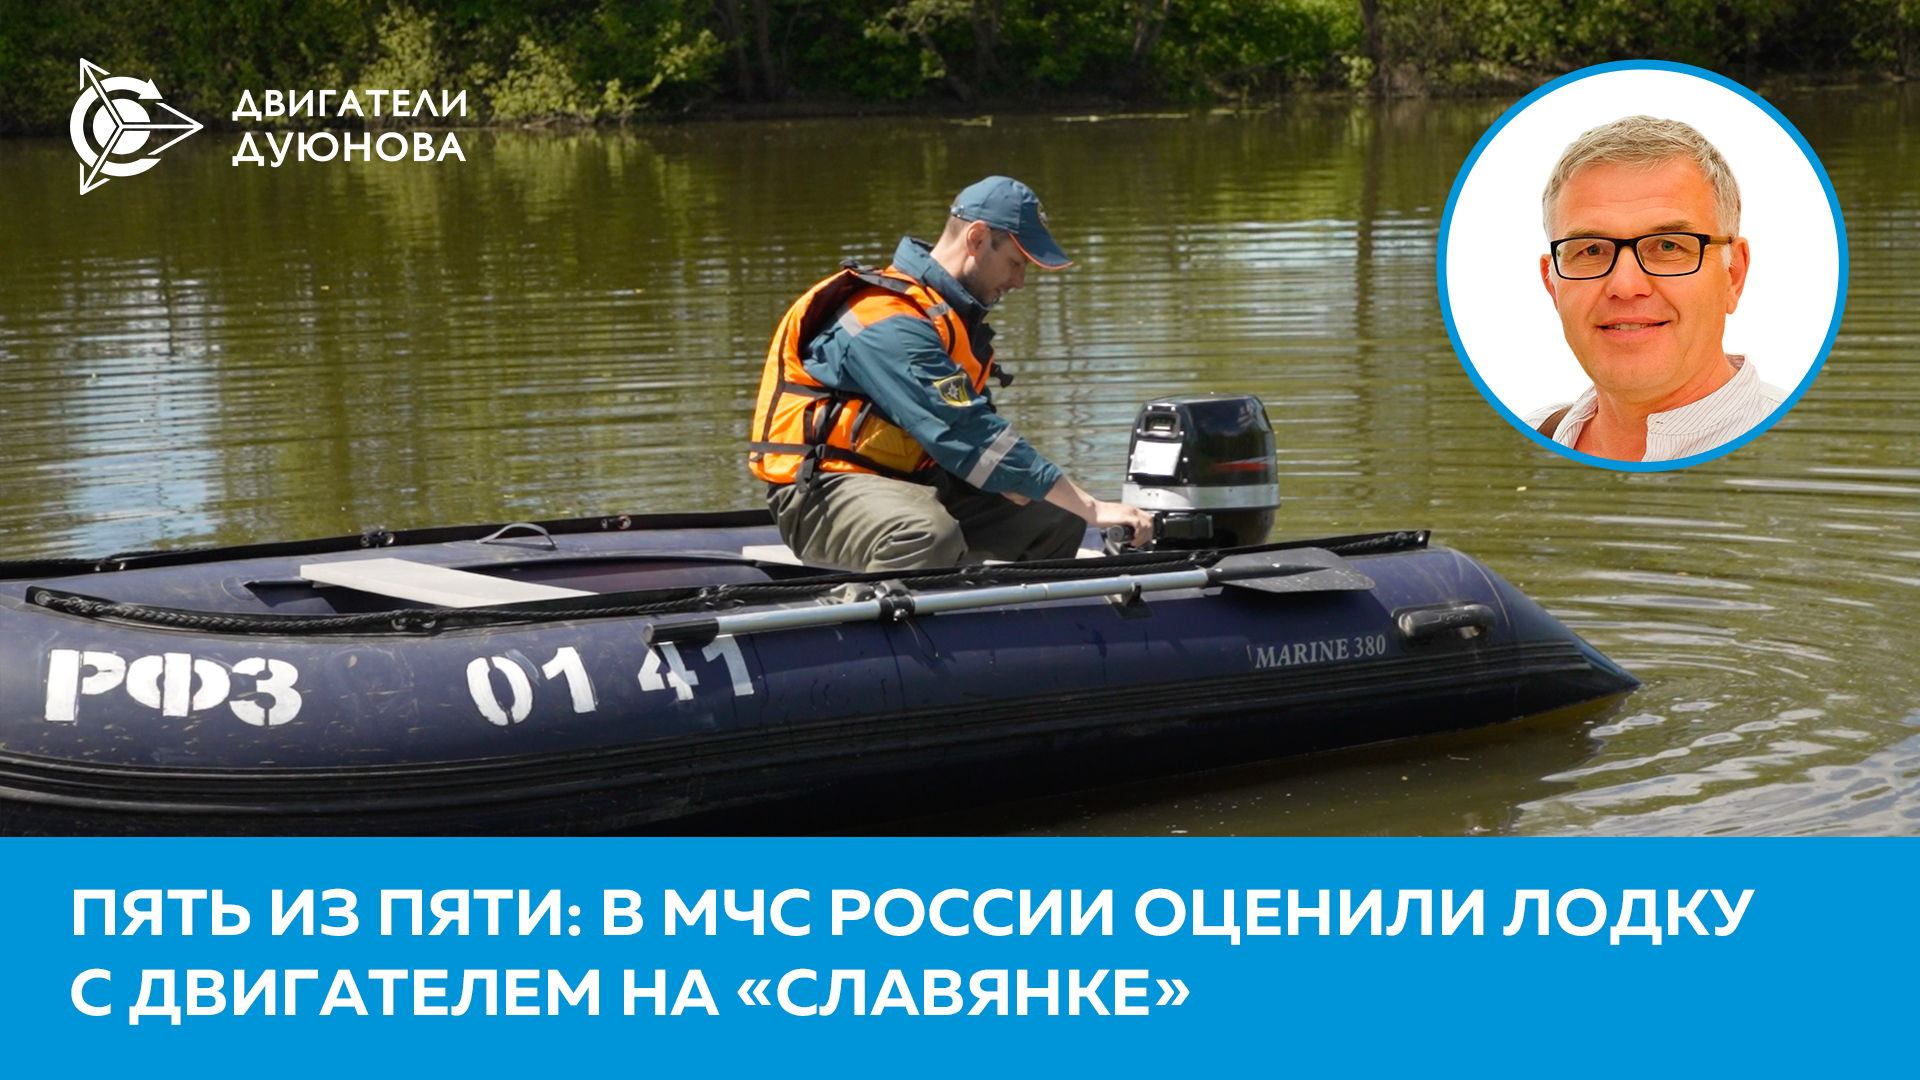 «Пять из пяти»: в МЧС России оценили лодку с двигателем на «Славянке»